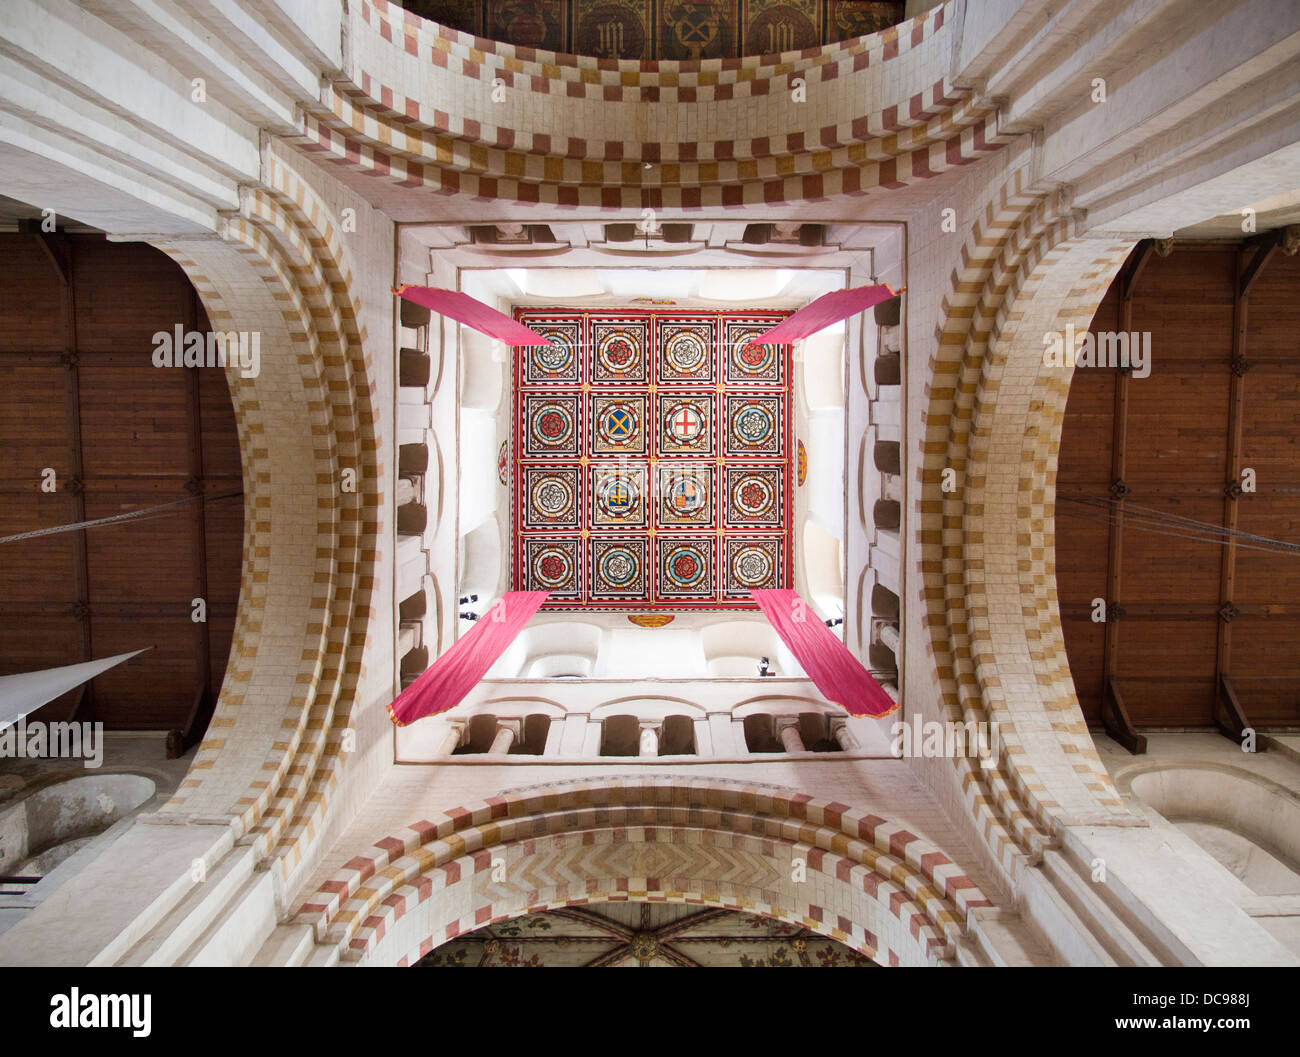 Kathedrale von St Albans in Hertfordshire, England - Interieur Stockfoto